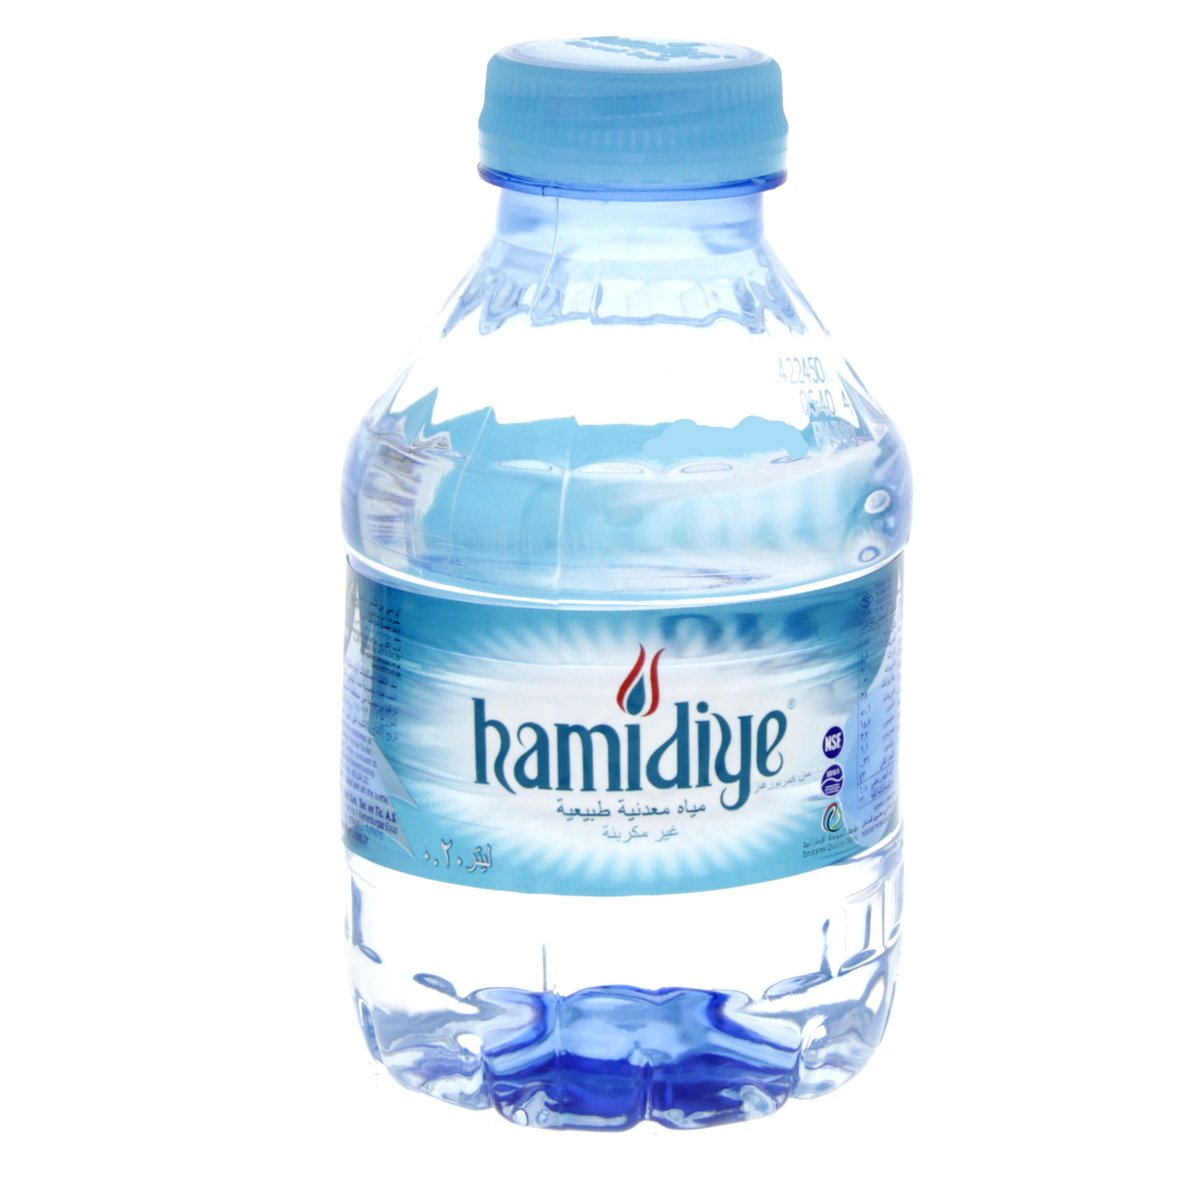 Hamidiye Natural Mineral Water 200 ml